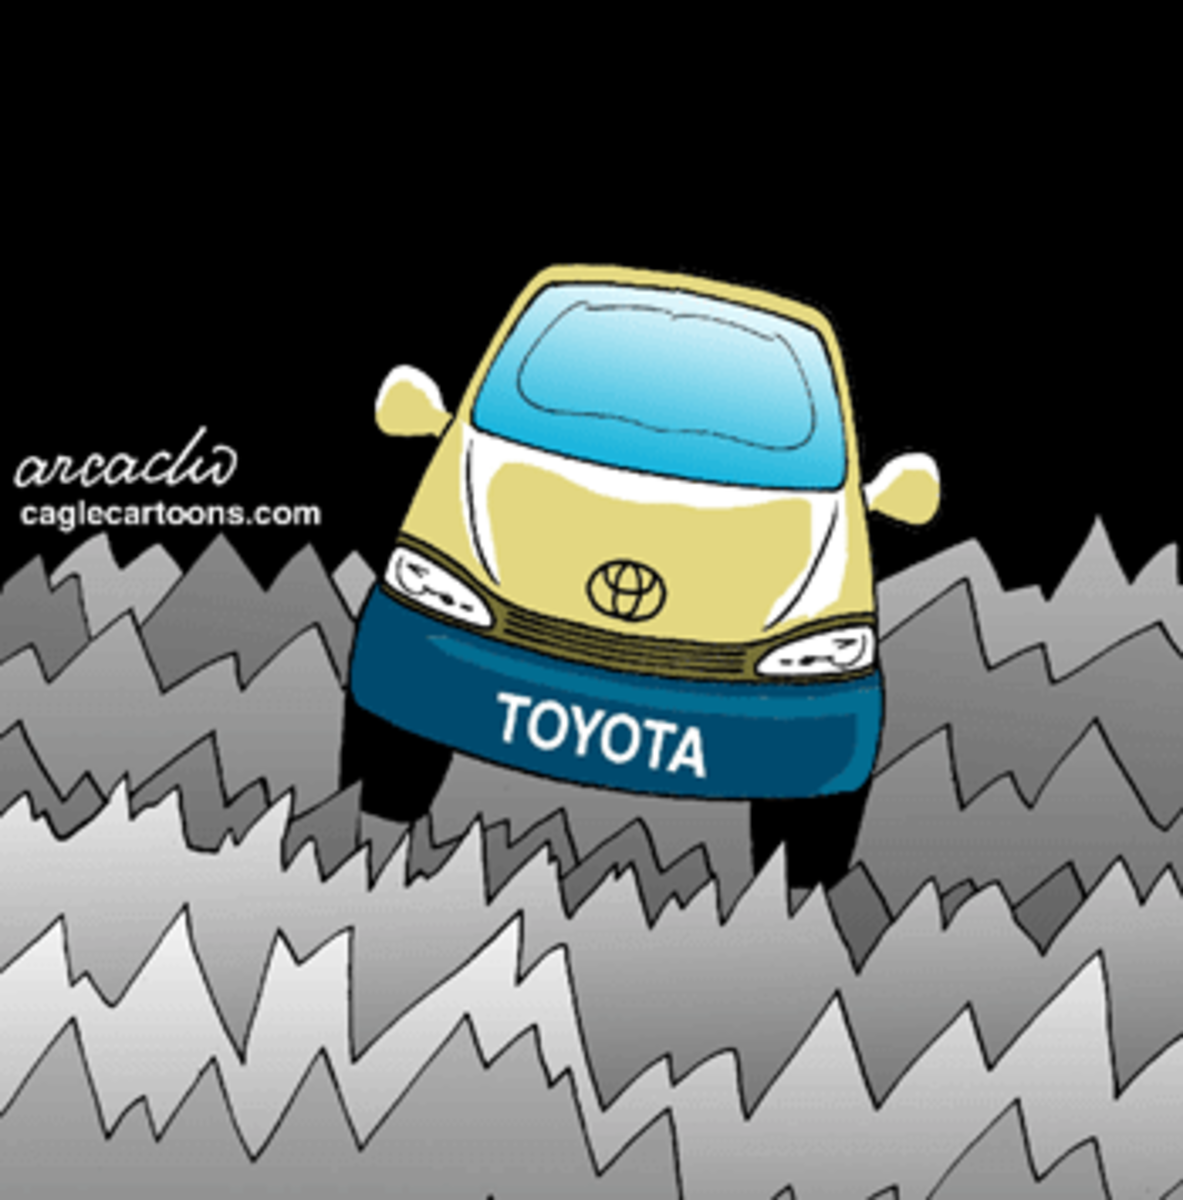 Toyota rough seas